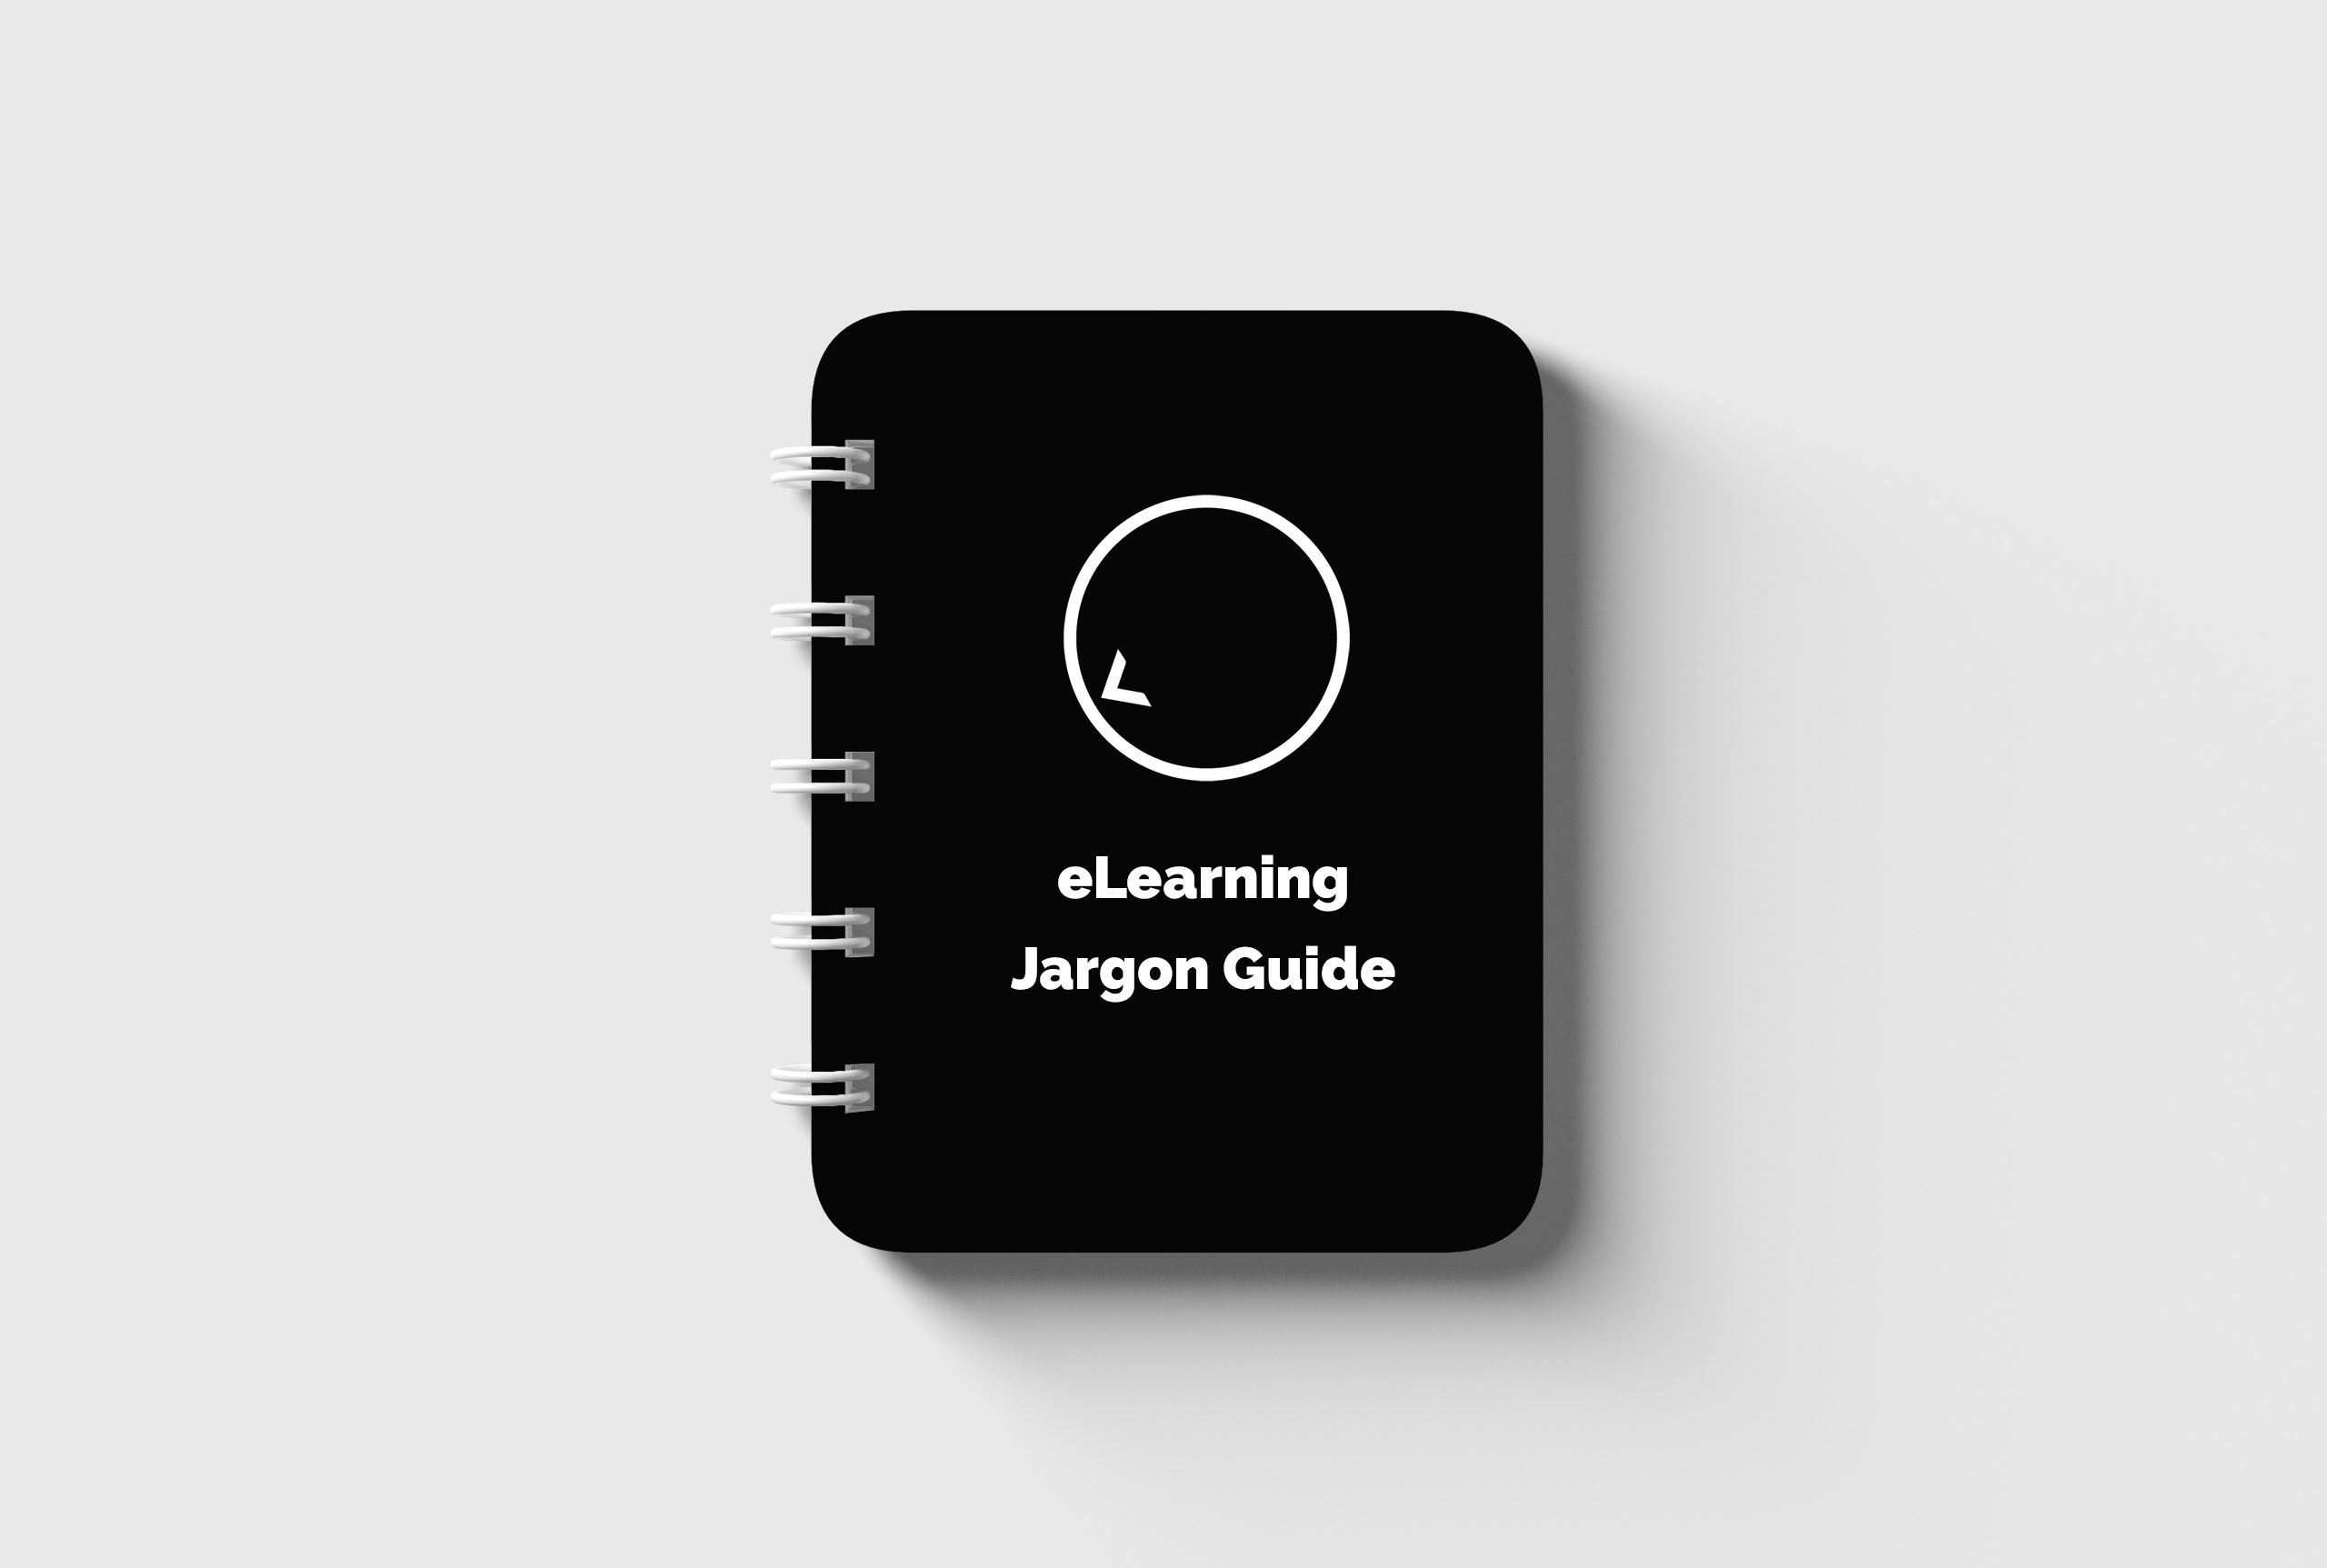 eLearning jargon guide